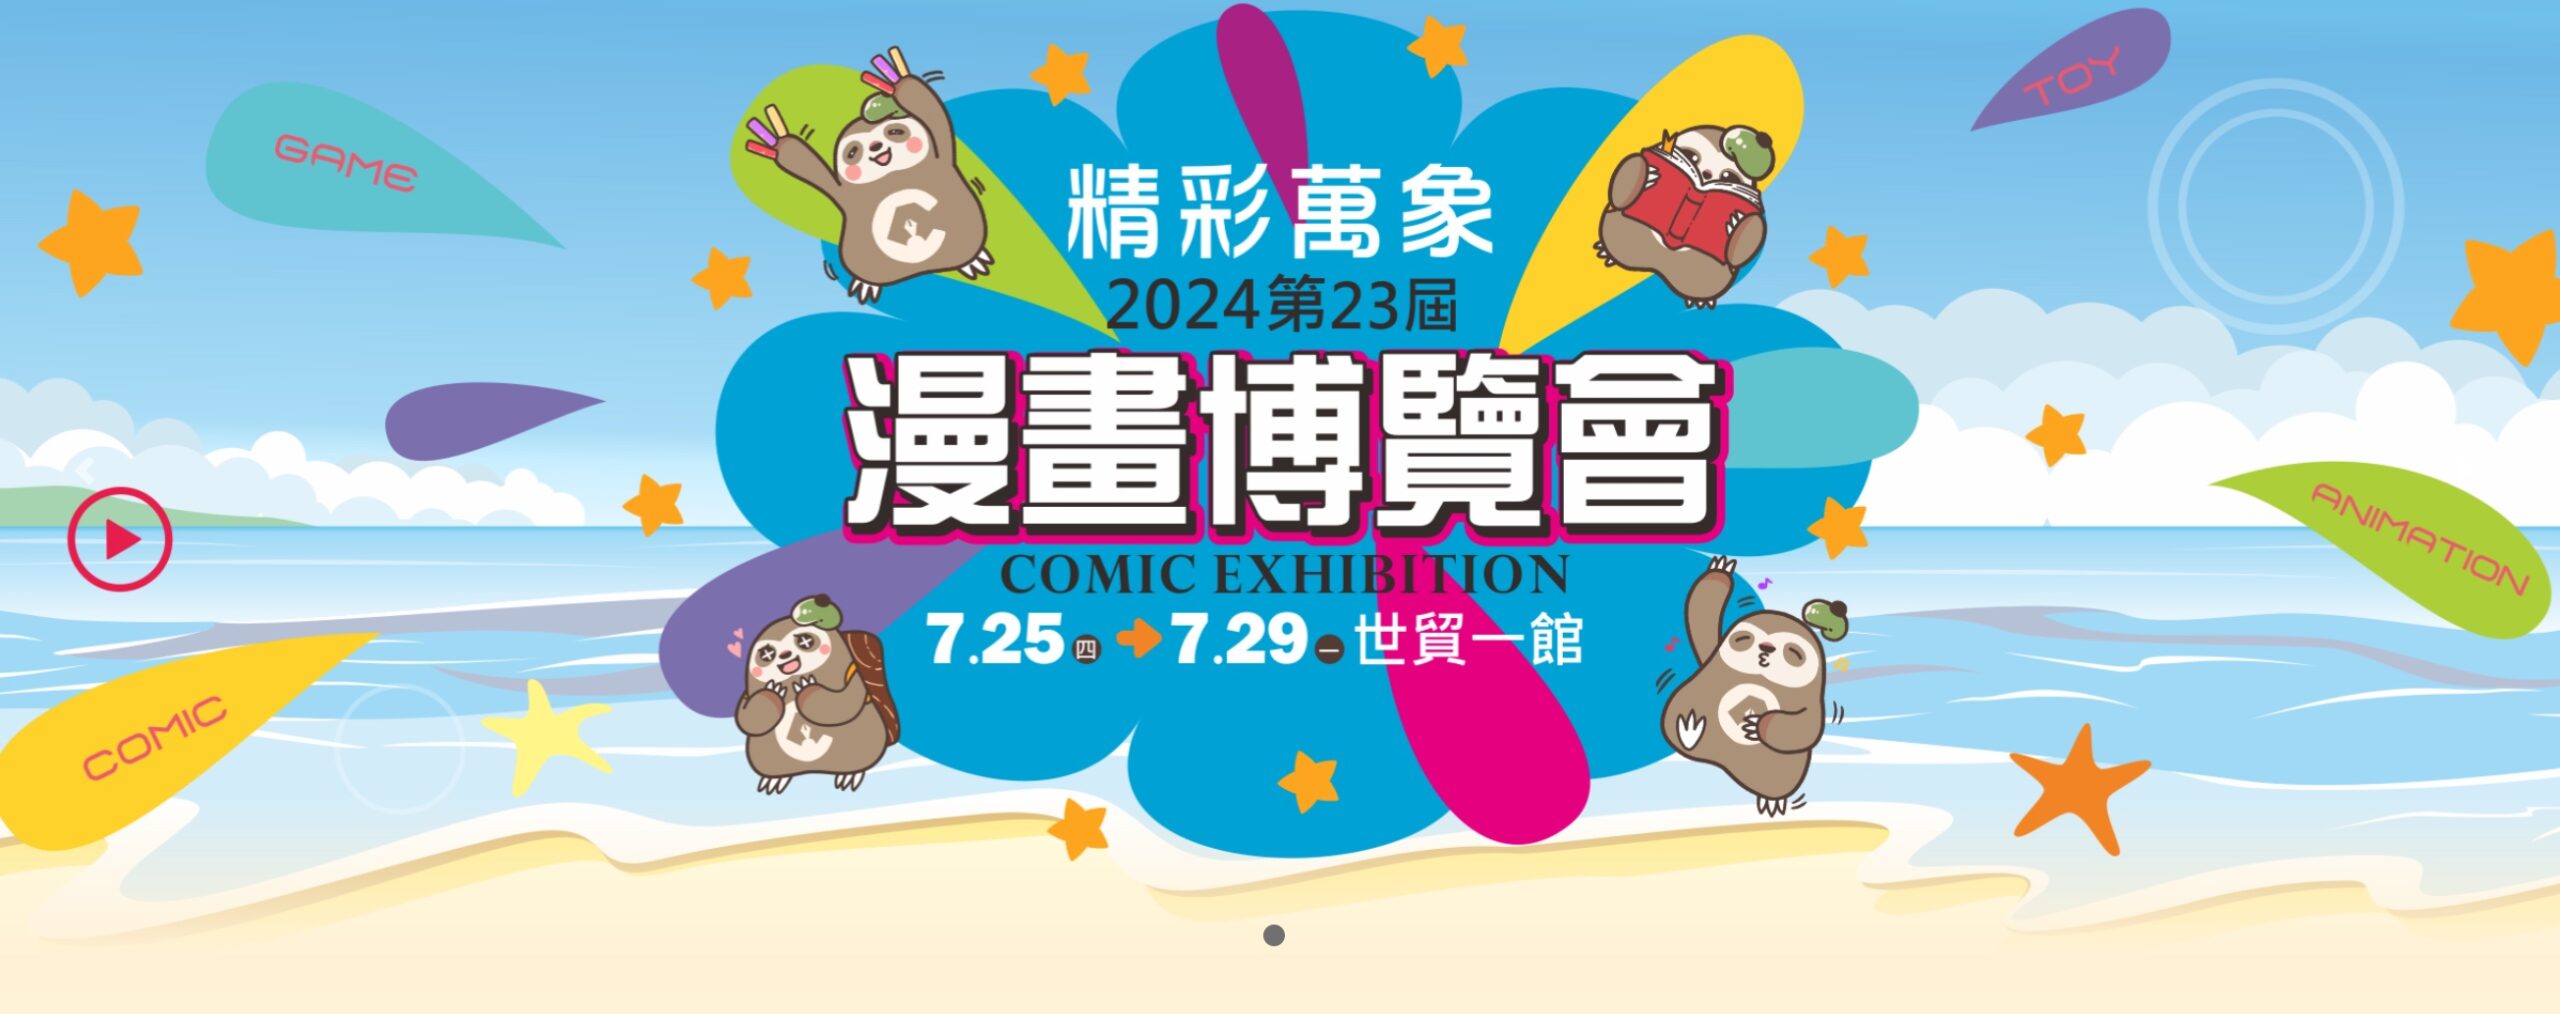 7 月 25 日漫博會因台北市放颱風假而沒有開展，但漫博會舉辦時間到 7 月 29 日，主辦單位也調整了展覽時間，26 日～28 日展出時間從上午10點～晚上7點；29 日展出時間為上午 10 點～晚上 6 點，大家可以把握時間。